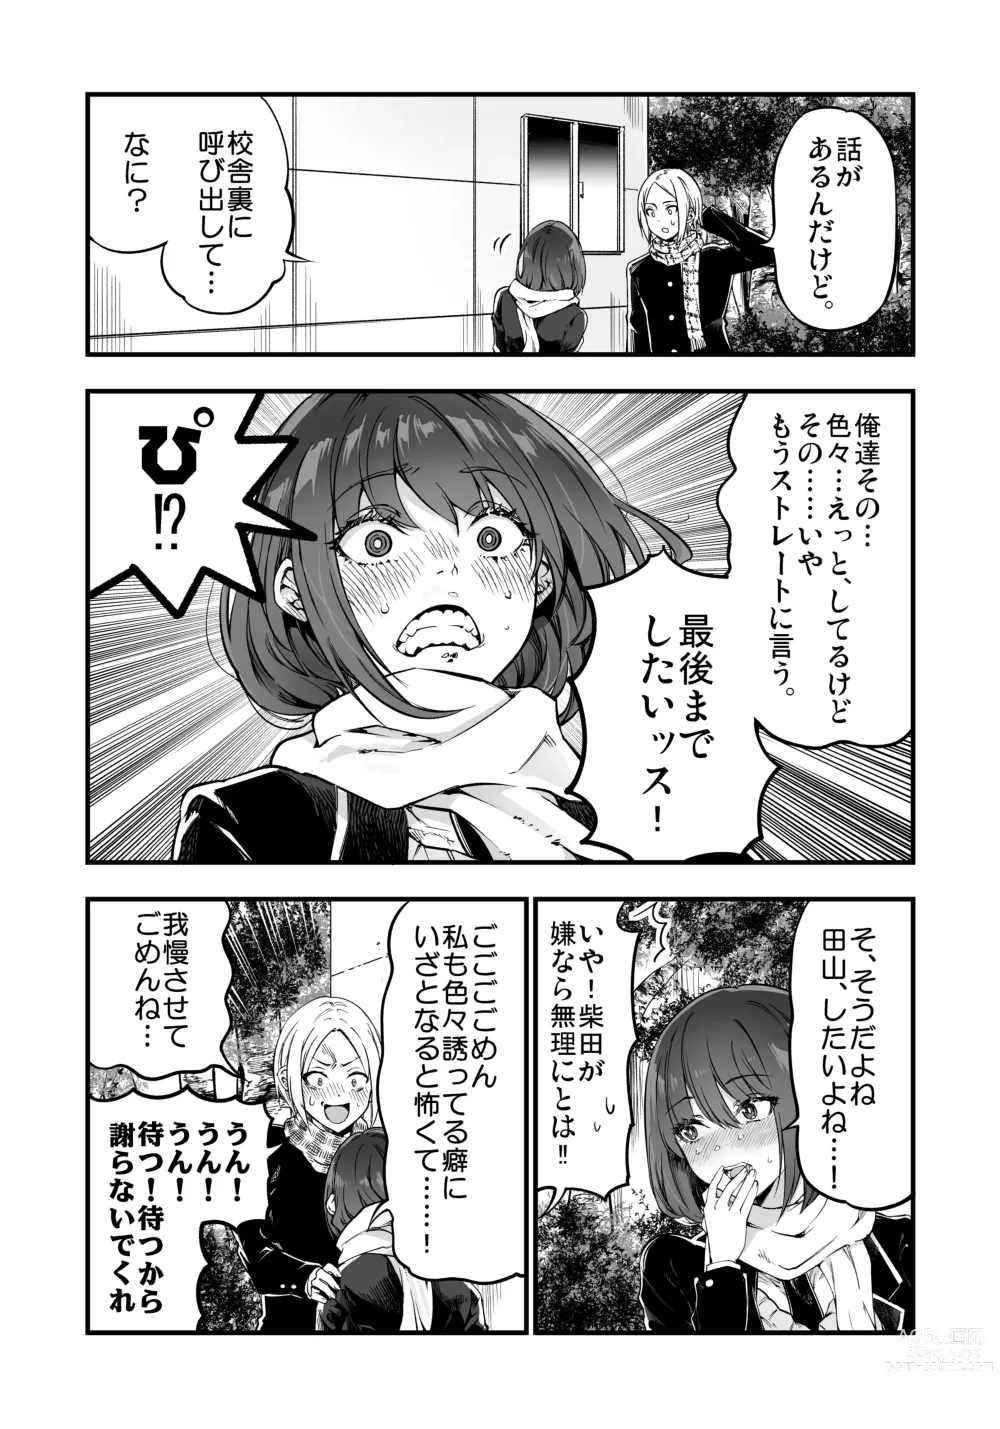 Page 42 of doujinshi Shibata-san to no Kakehiki